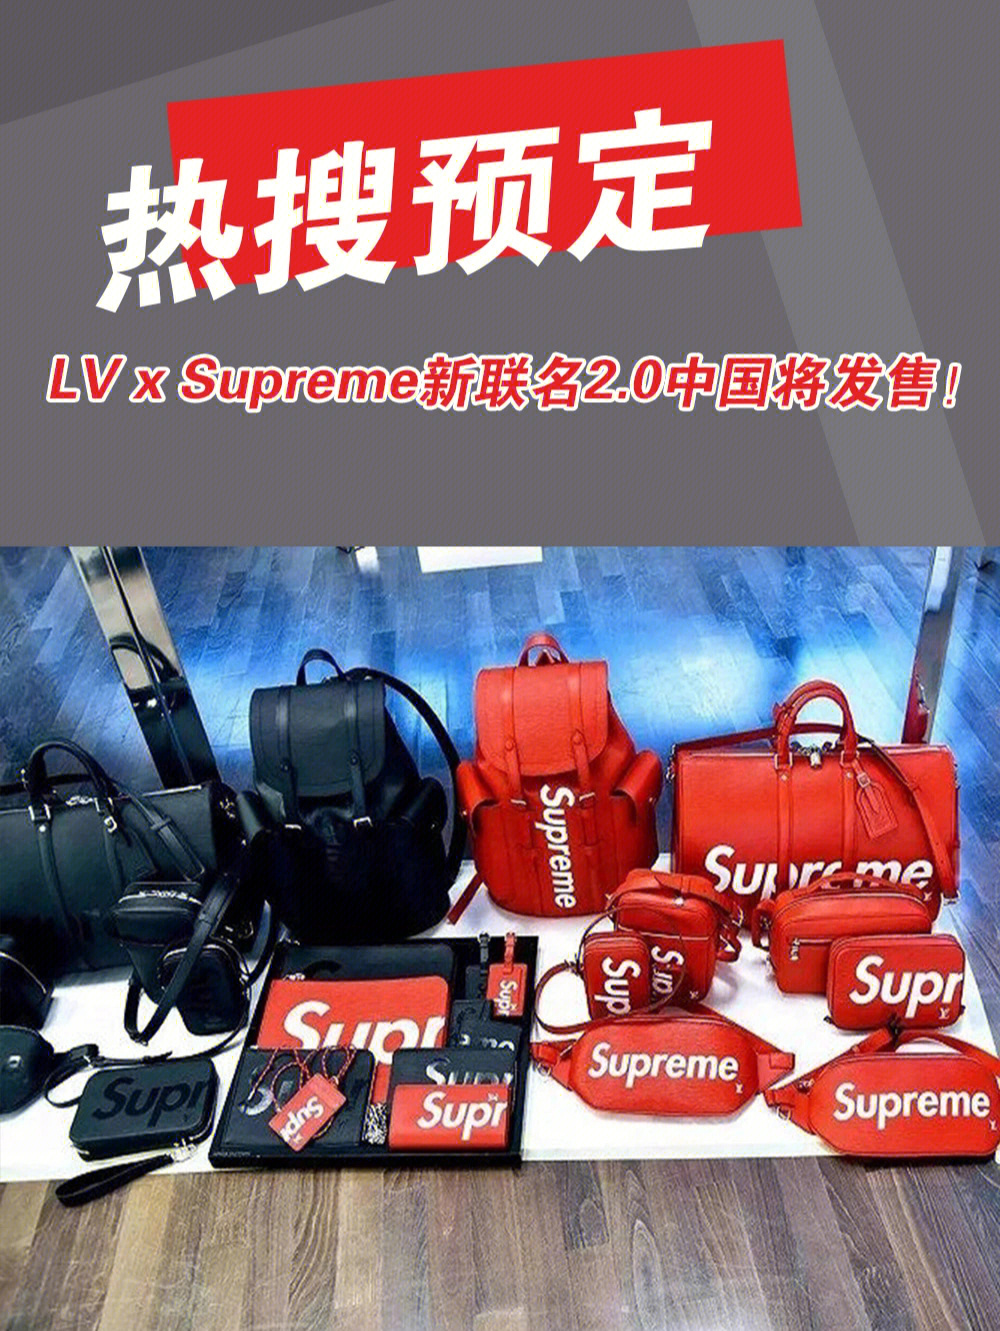 热搜预定lvxsupreme新联名20中国将发